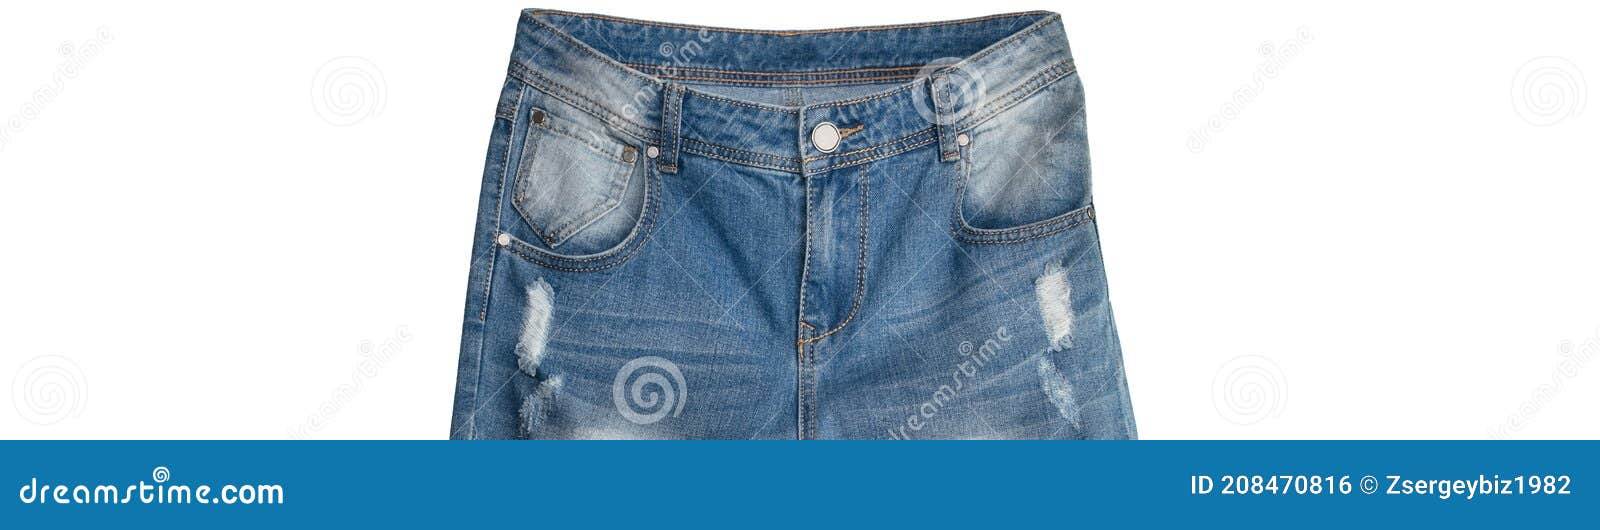 Gap Jeans Womens 31 R Resolution Skinny Blue Denim Light Wash Stretch | eBay